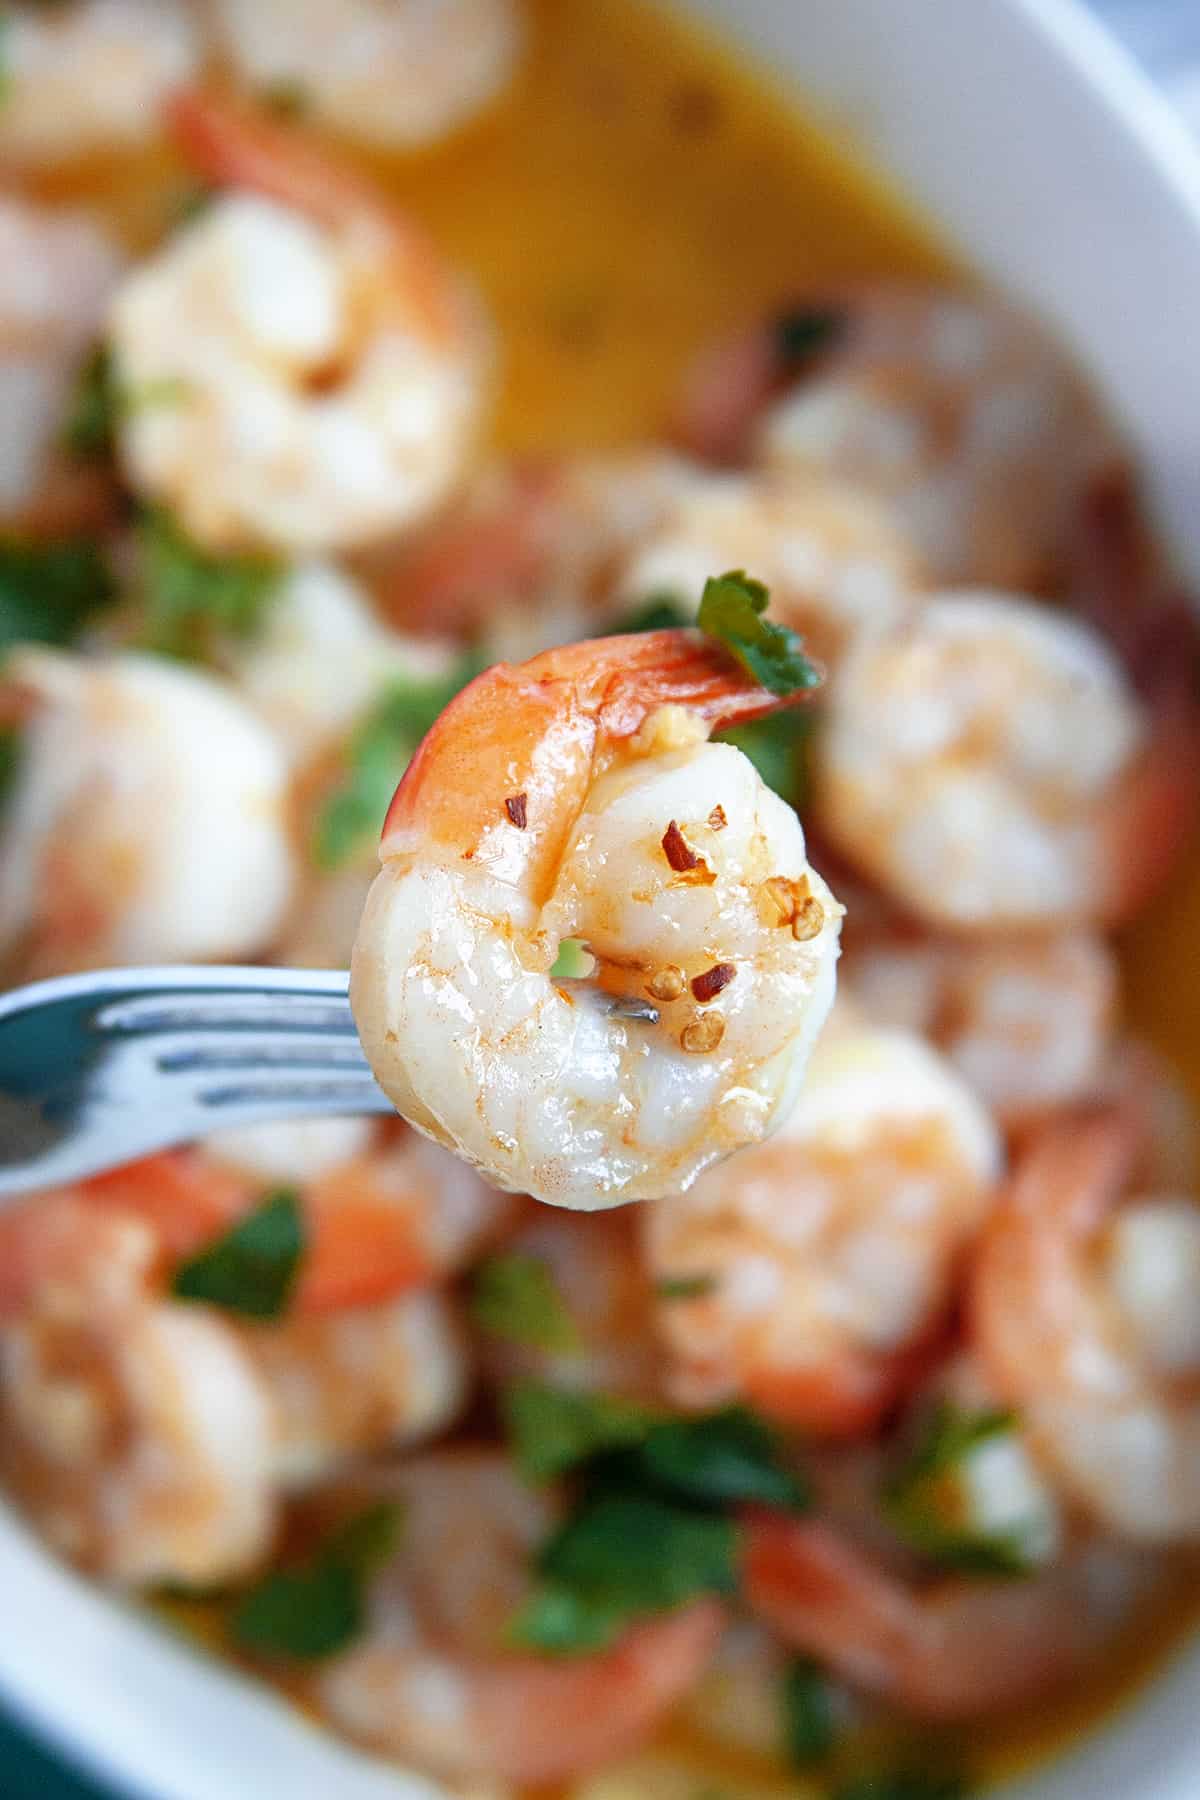 Shrimp on a fork close-up. 